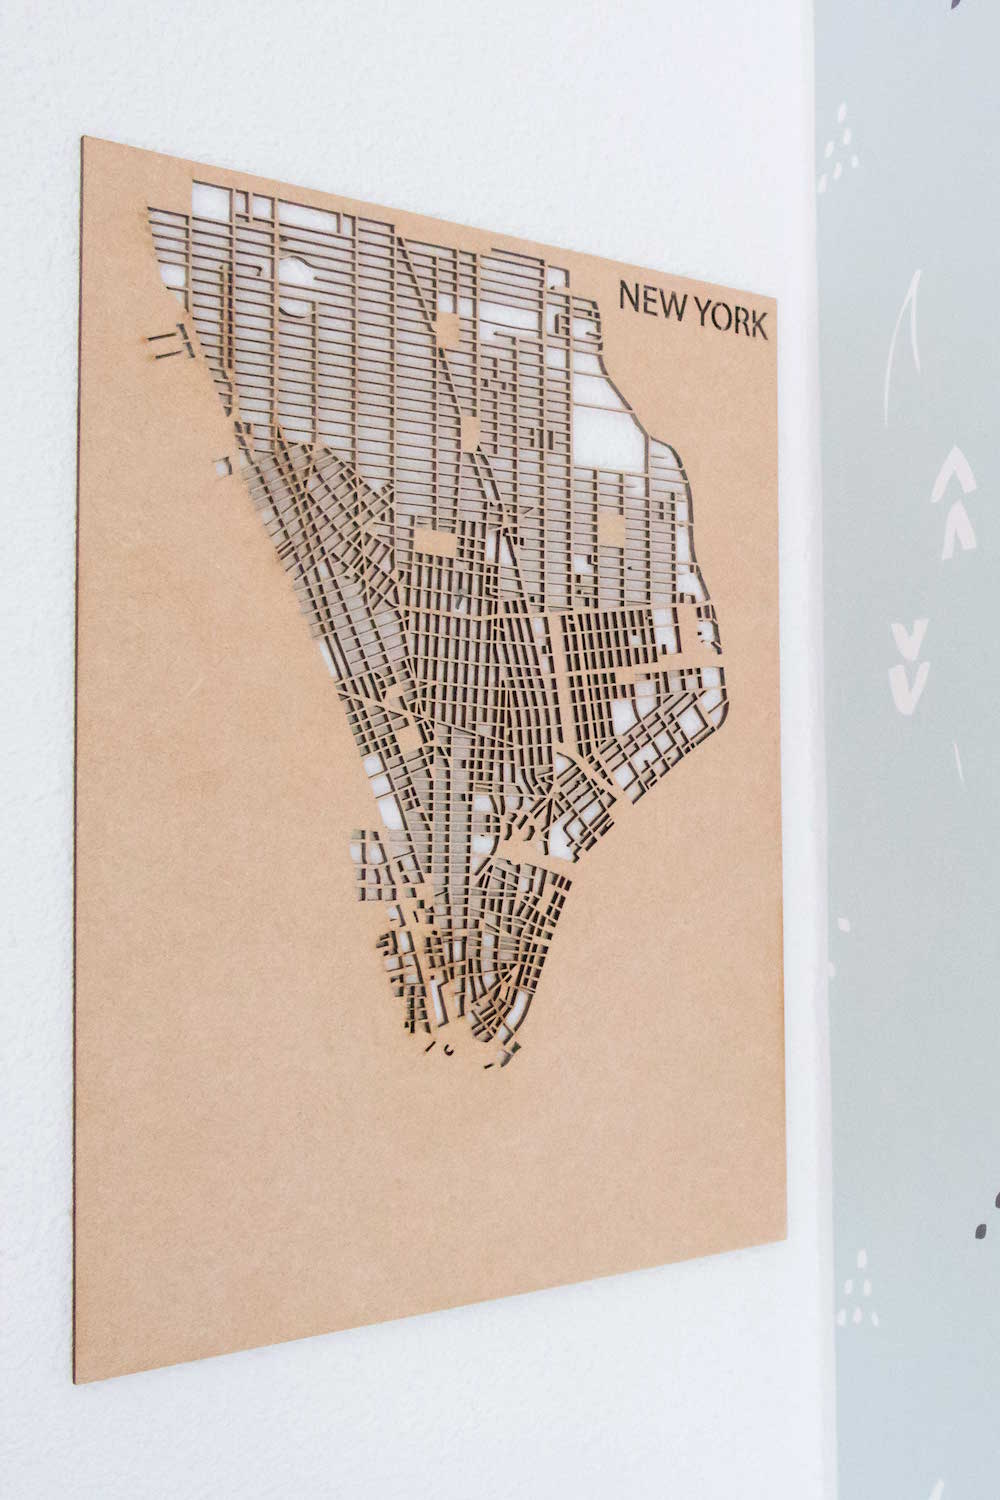 PlanqKaart Houten Stadskaart New York is een houten stadsplattegrond van New York voor aan de muur.